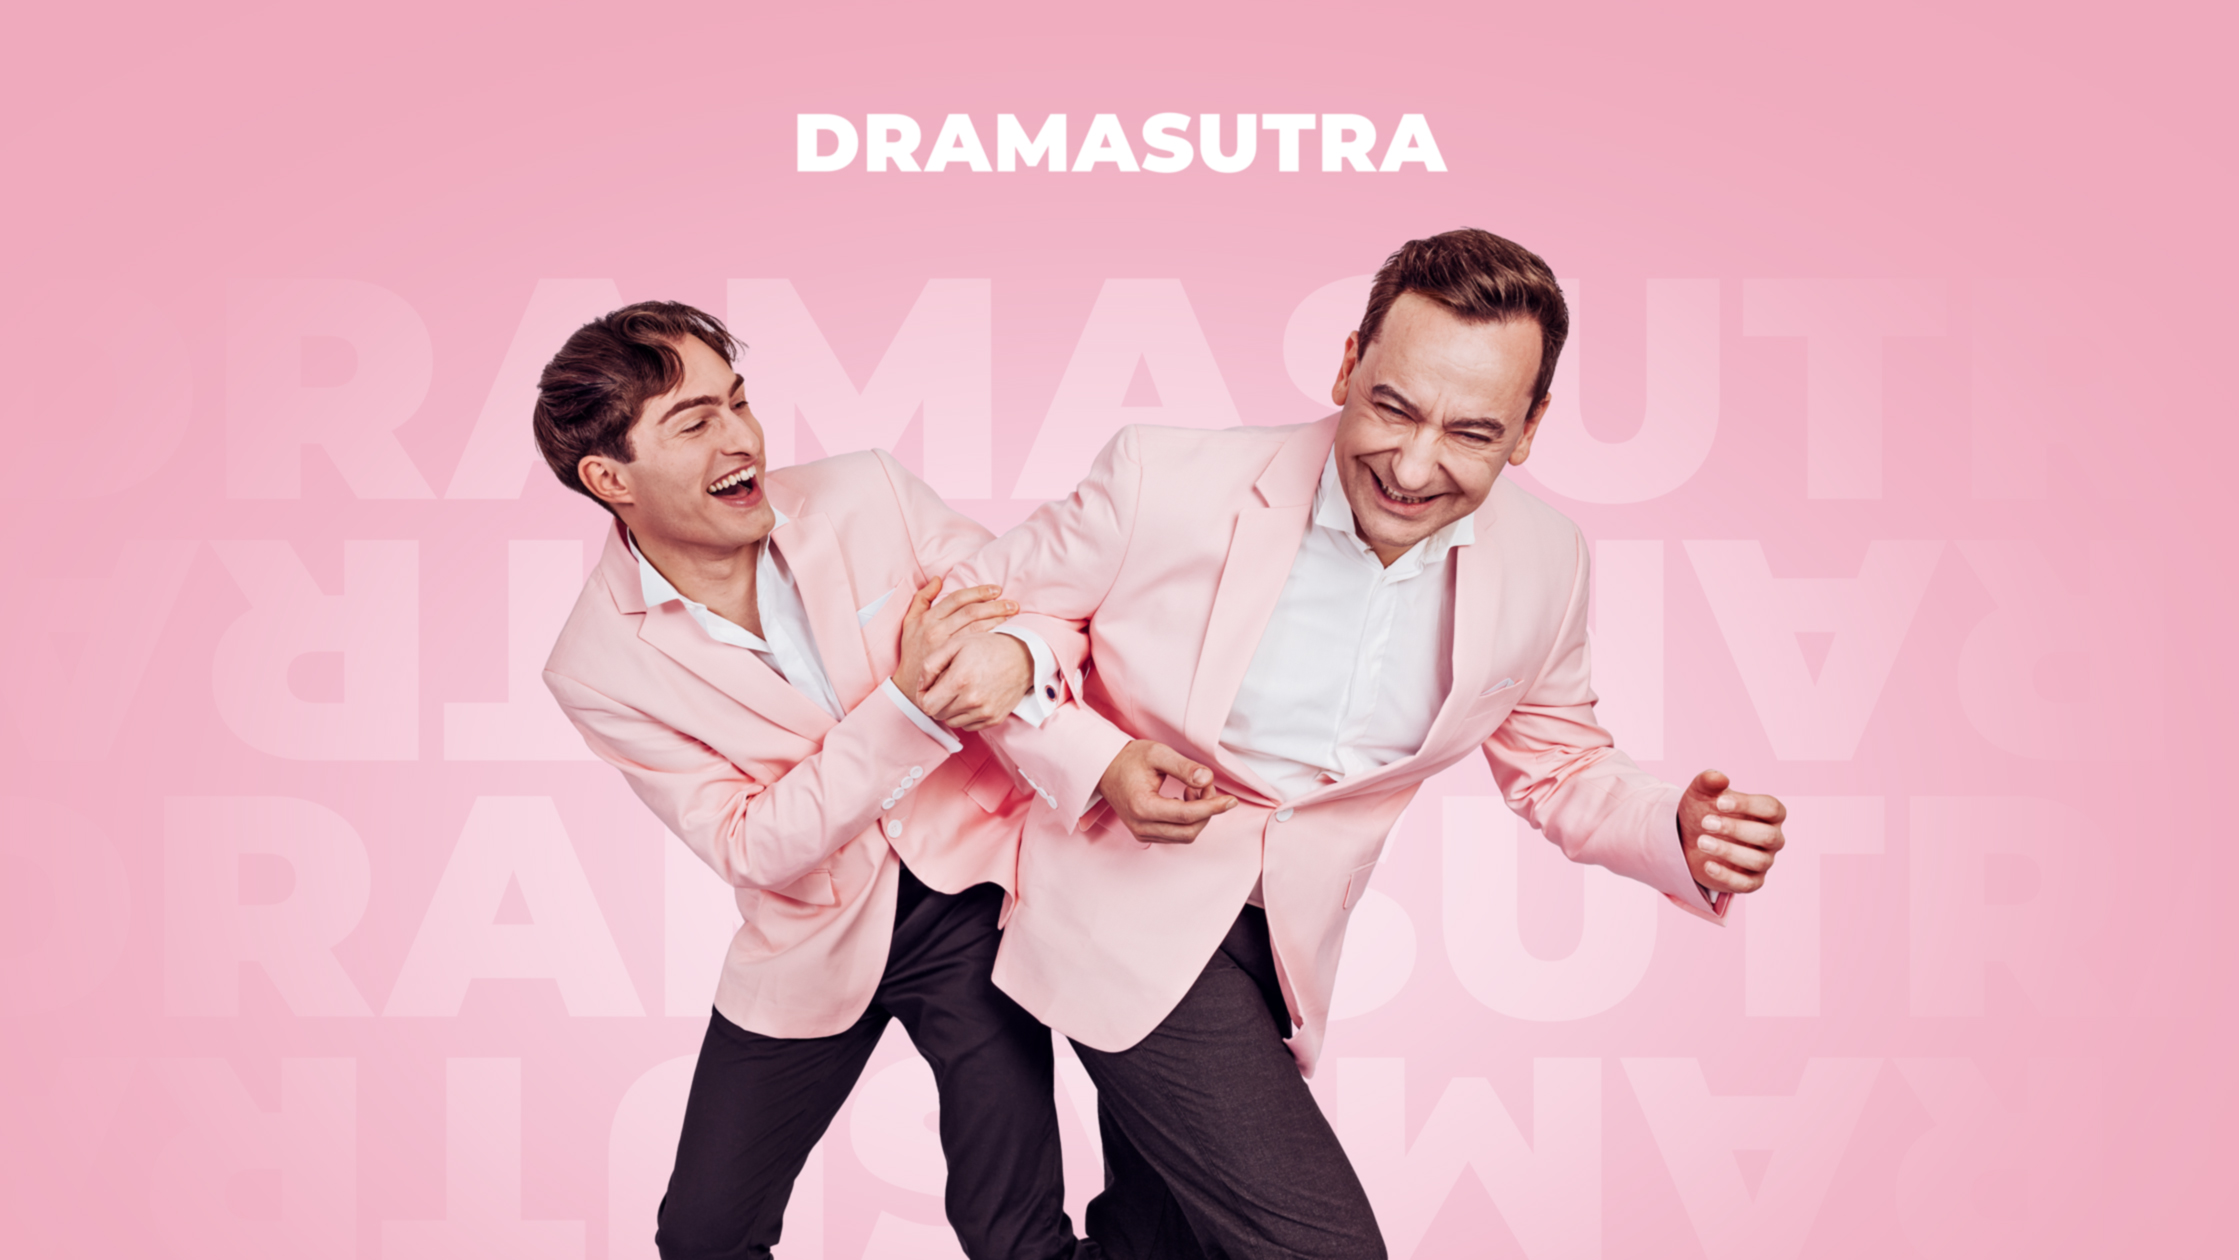 Dramasutra – Der Podcast von Atimo und Mister Matthew – Pressemitteilung.